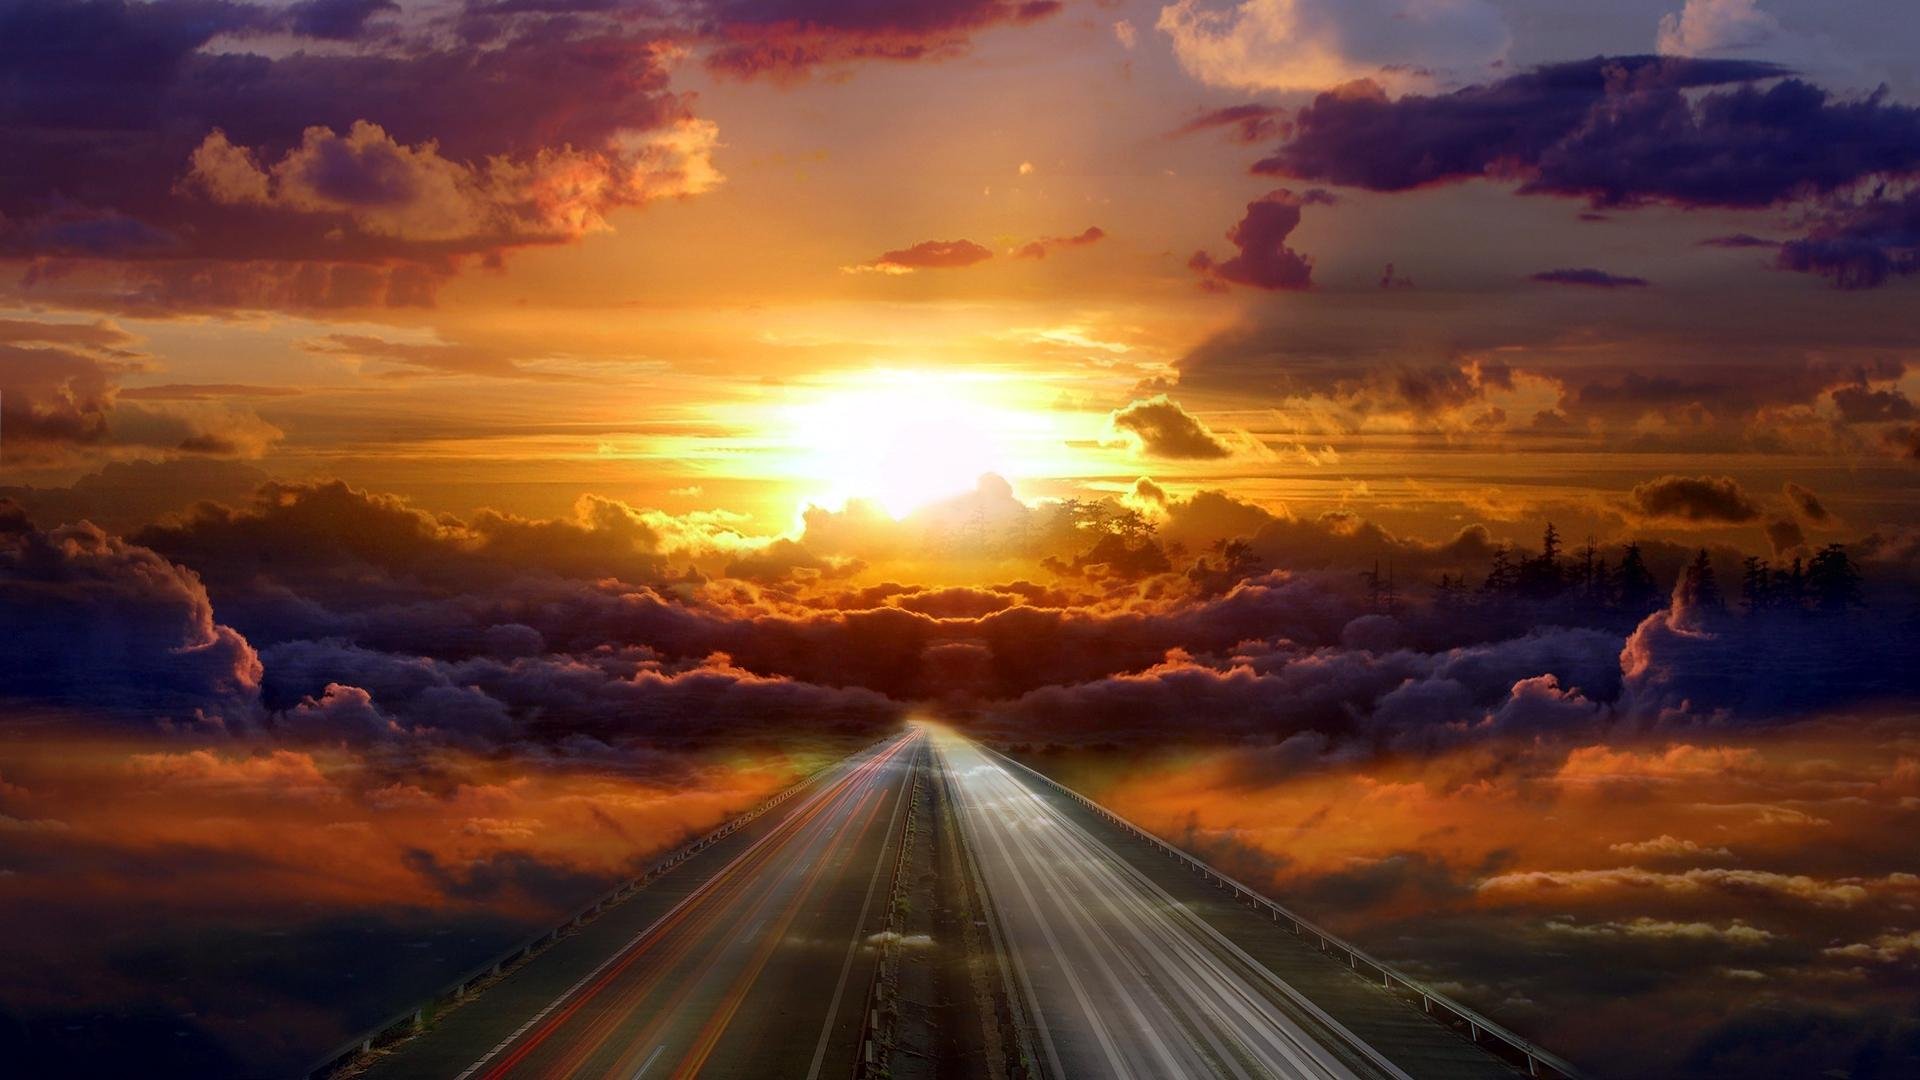 Menakjubkan, Cantik, Kecantikan, Awan, Langit, Matahari, - Road To Heaven - HD Wallpaper 